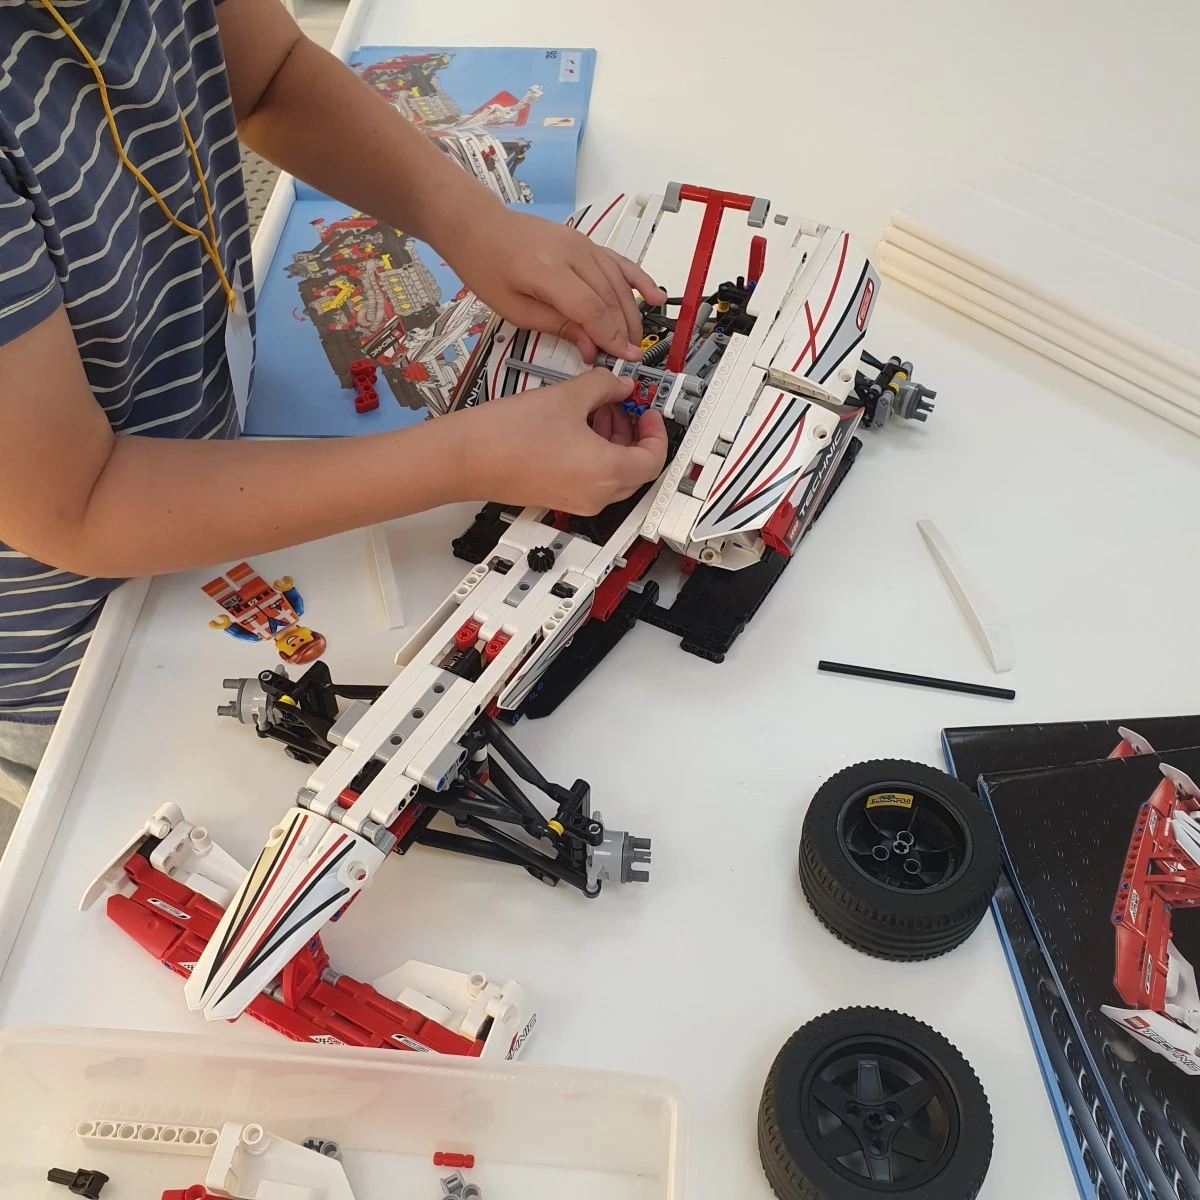 Atención y concentración al montar LEGO